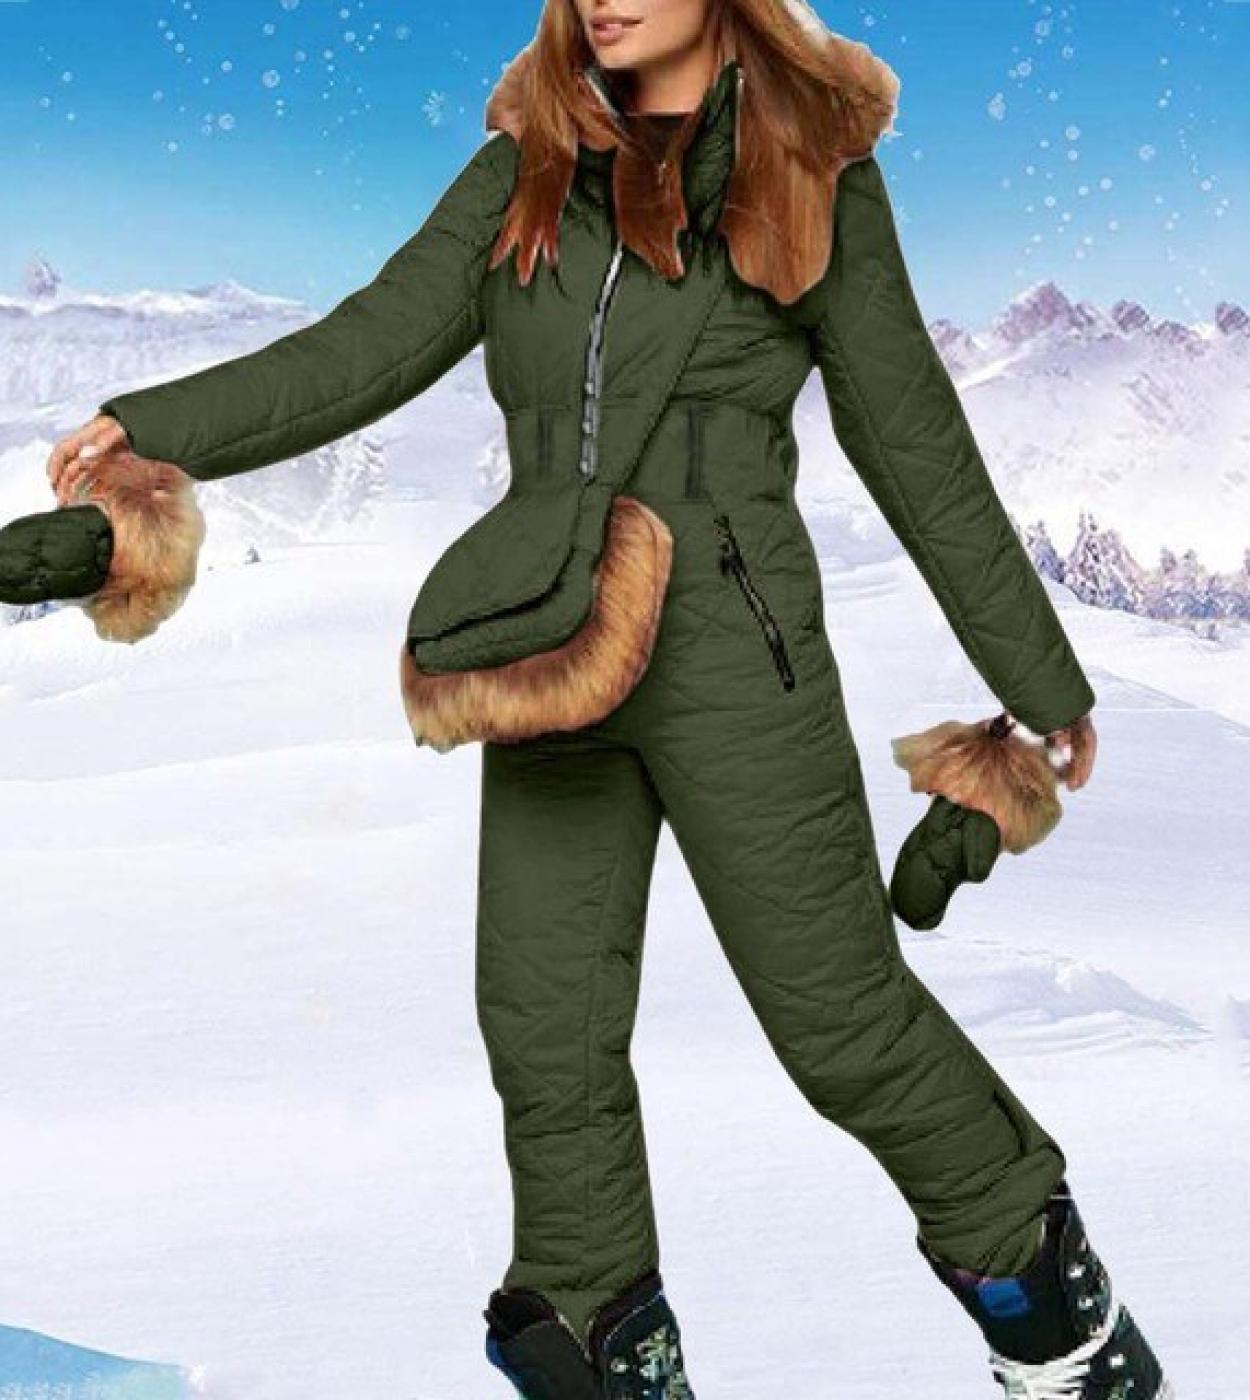 https://d3en8d2cl9etnr.cloudfront.net/885160-large_default/winter-ski-jumpsuit-womenwhite-ski-suits-comfy-hooded-faux-fur-jacket-.jpg